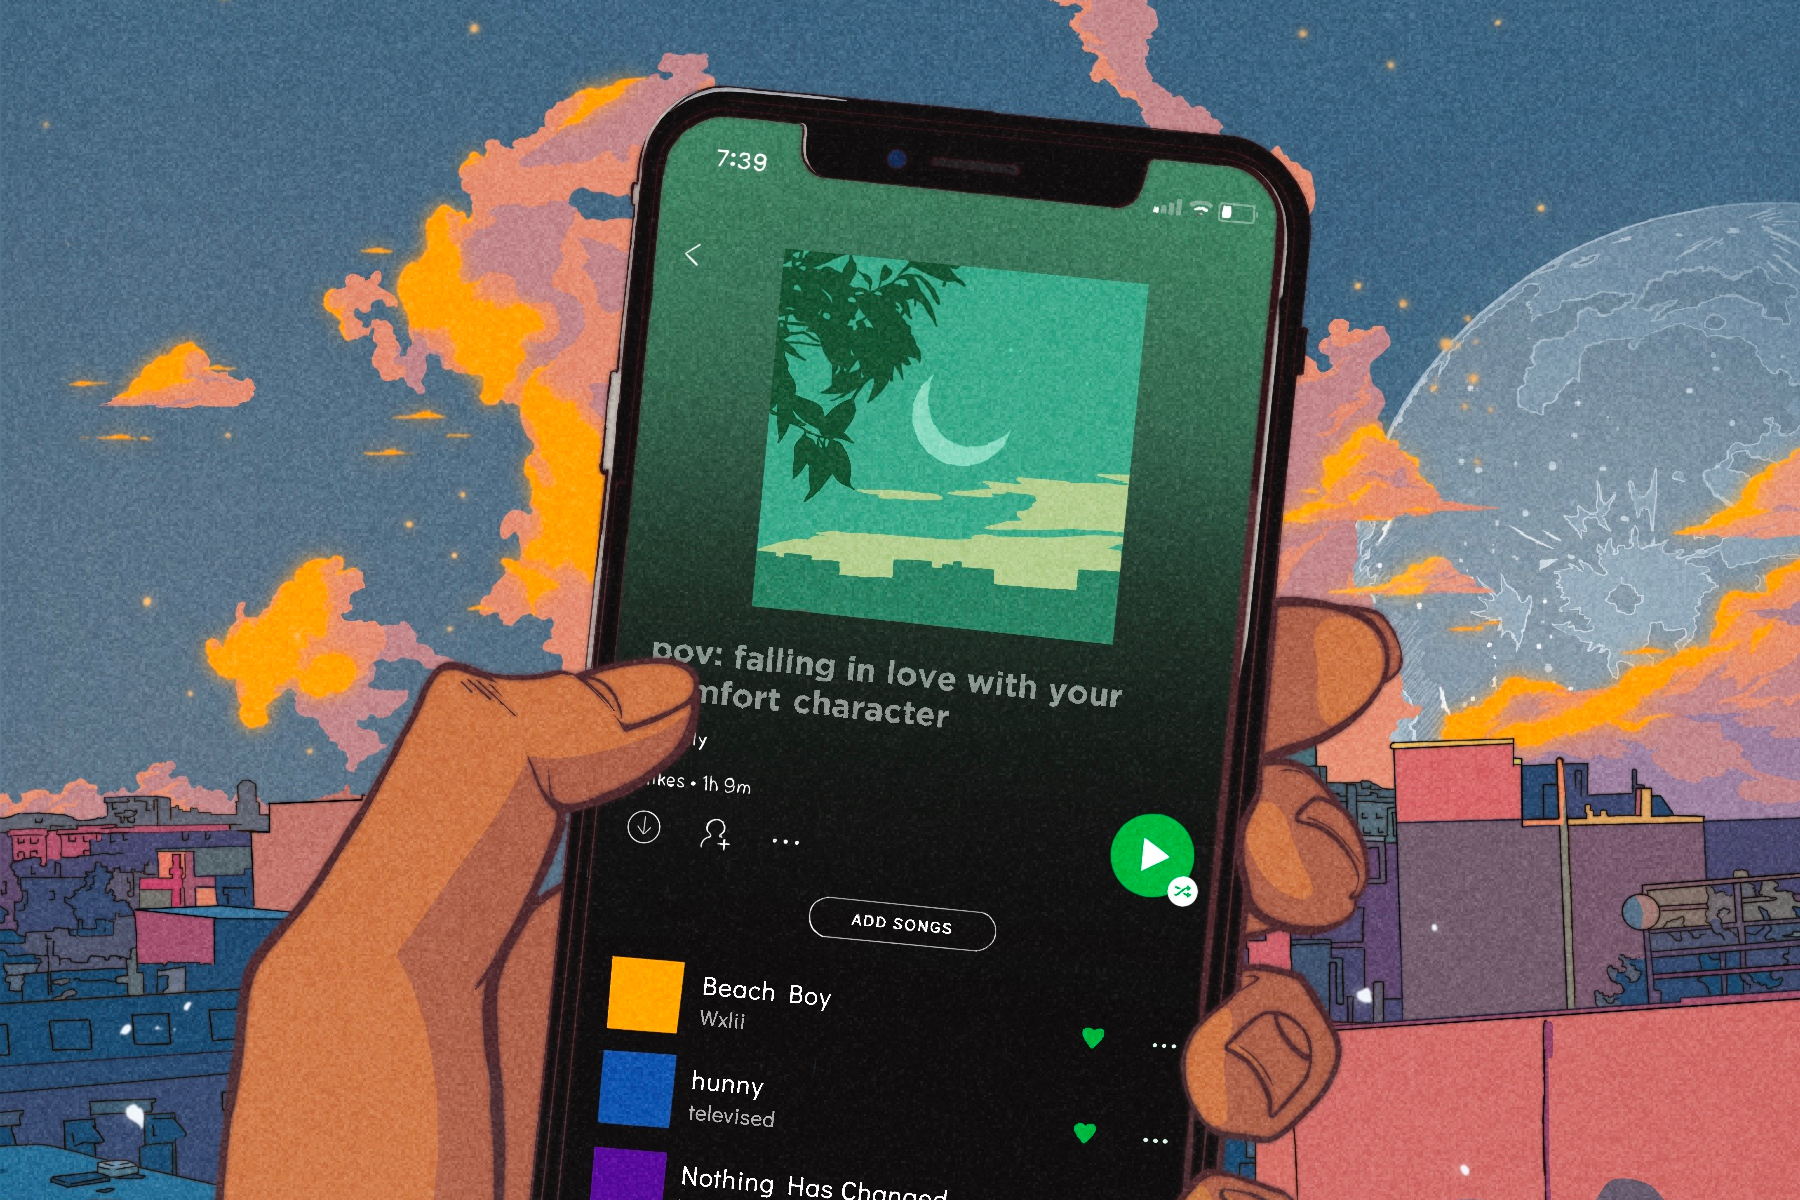 Rage Quit - playlist by Spotify